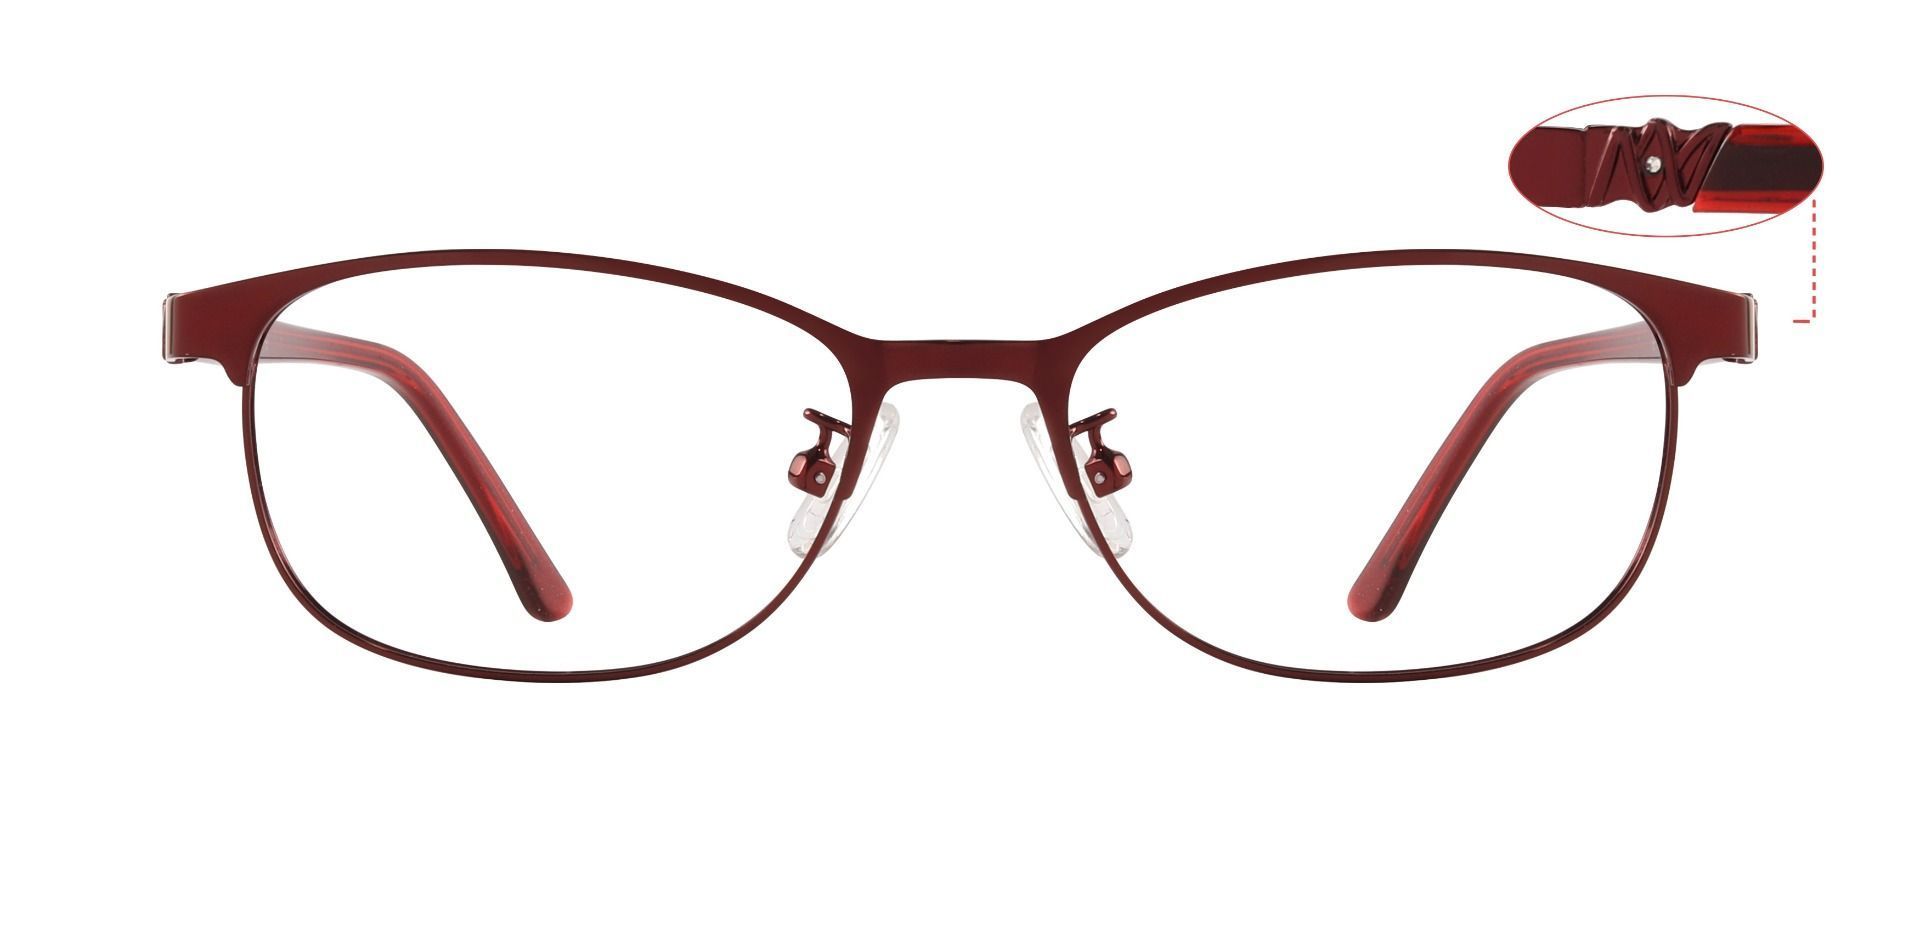 Luisa Oval Progressive Glasses - Green | Women's Eyeglasses | Payne Glasses